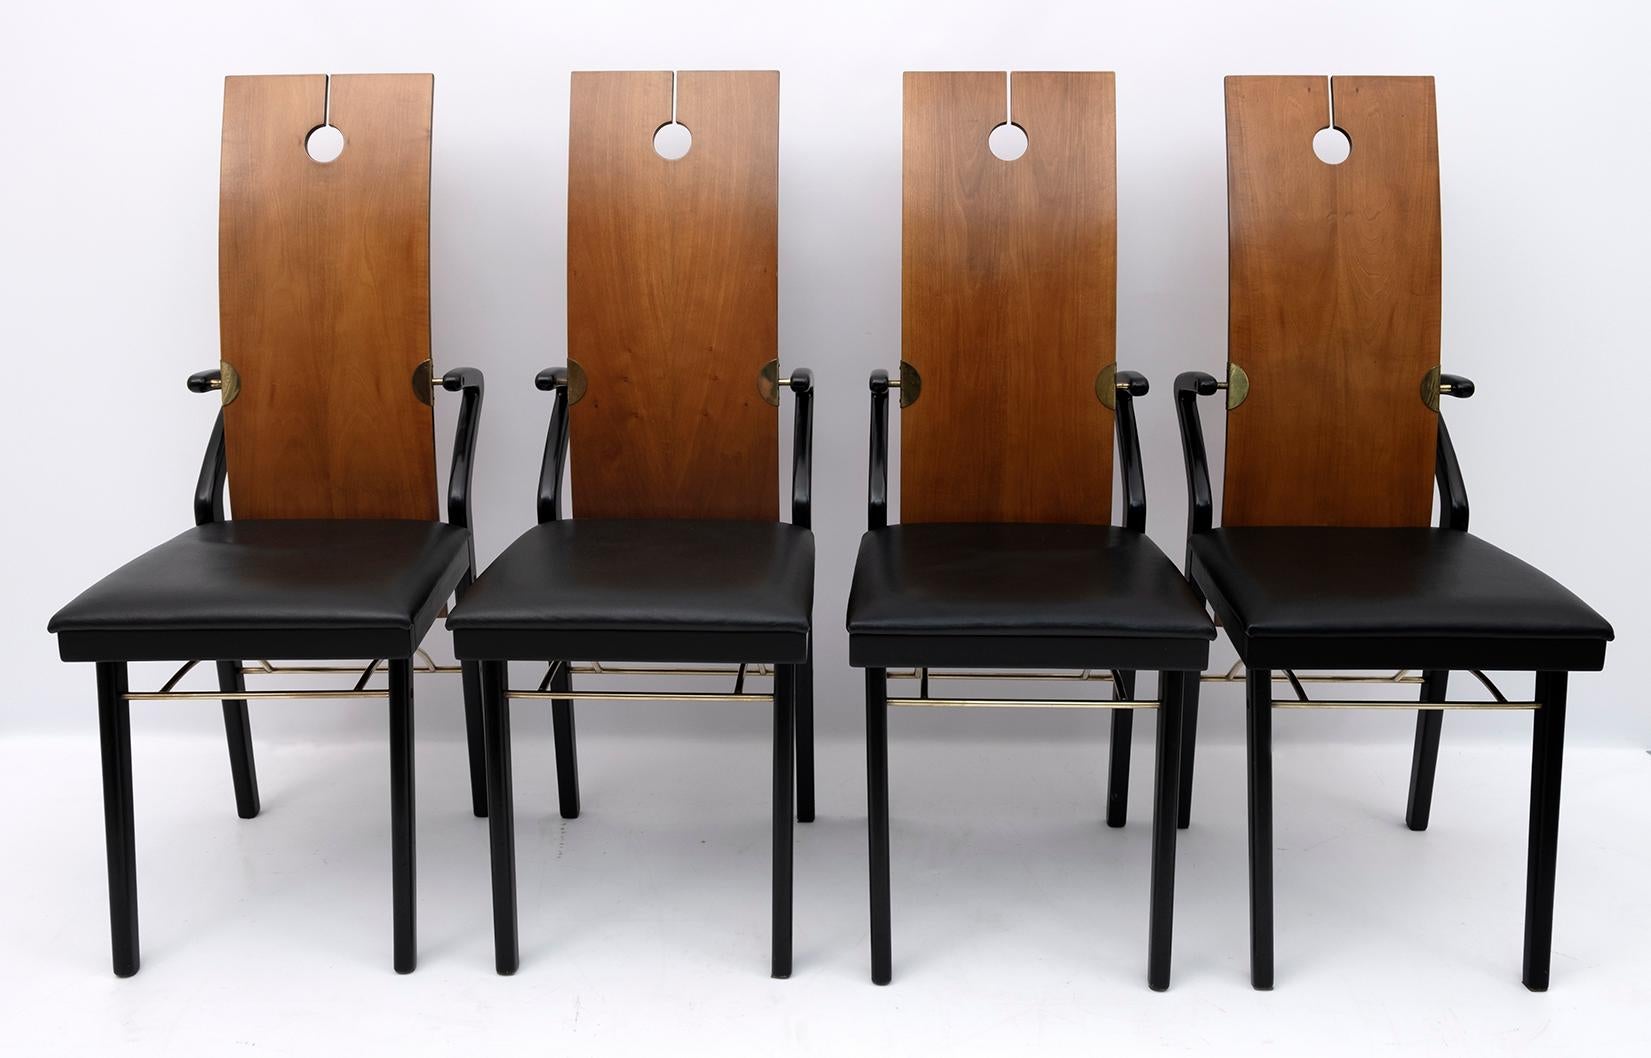 Vier Esszimmerstühle von Pierre Cardin, 1980er Jahre. Absolut seltene Produktion, entworfen von Pierre Cardin in Italien. Rückenlehne aus gebogener Kirsche mit einem Schnitt und einem Loch, die ihn absolut einzigartig machen, Sitz und Beine immer in